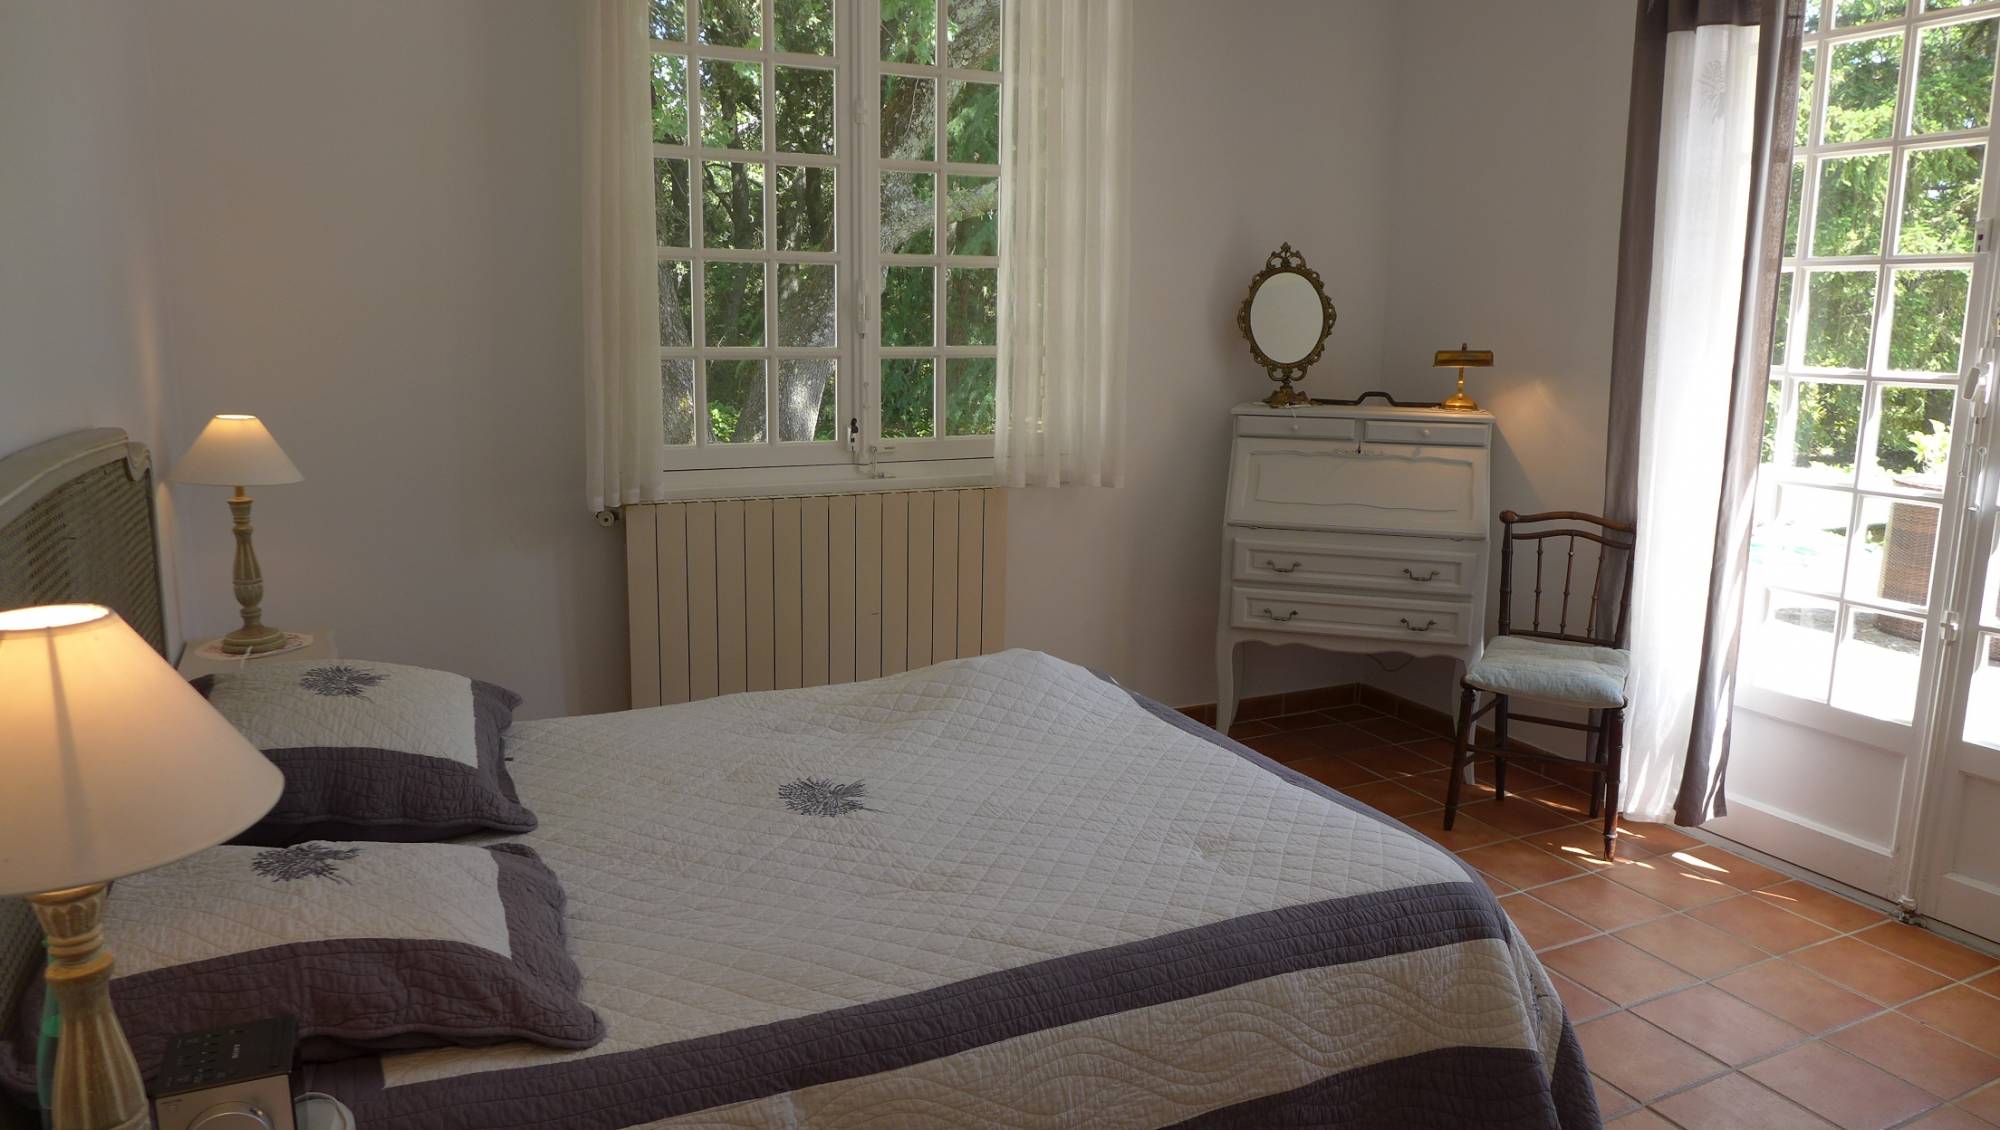 Villa à louer Drome Provençale, de plain pied accessible aux personnes à mobilité réduite, Piscine privative 